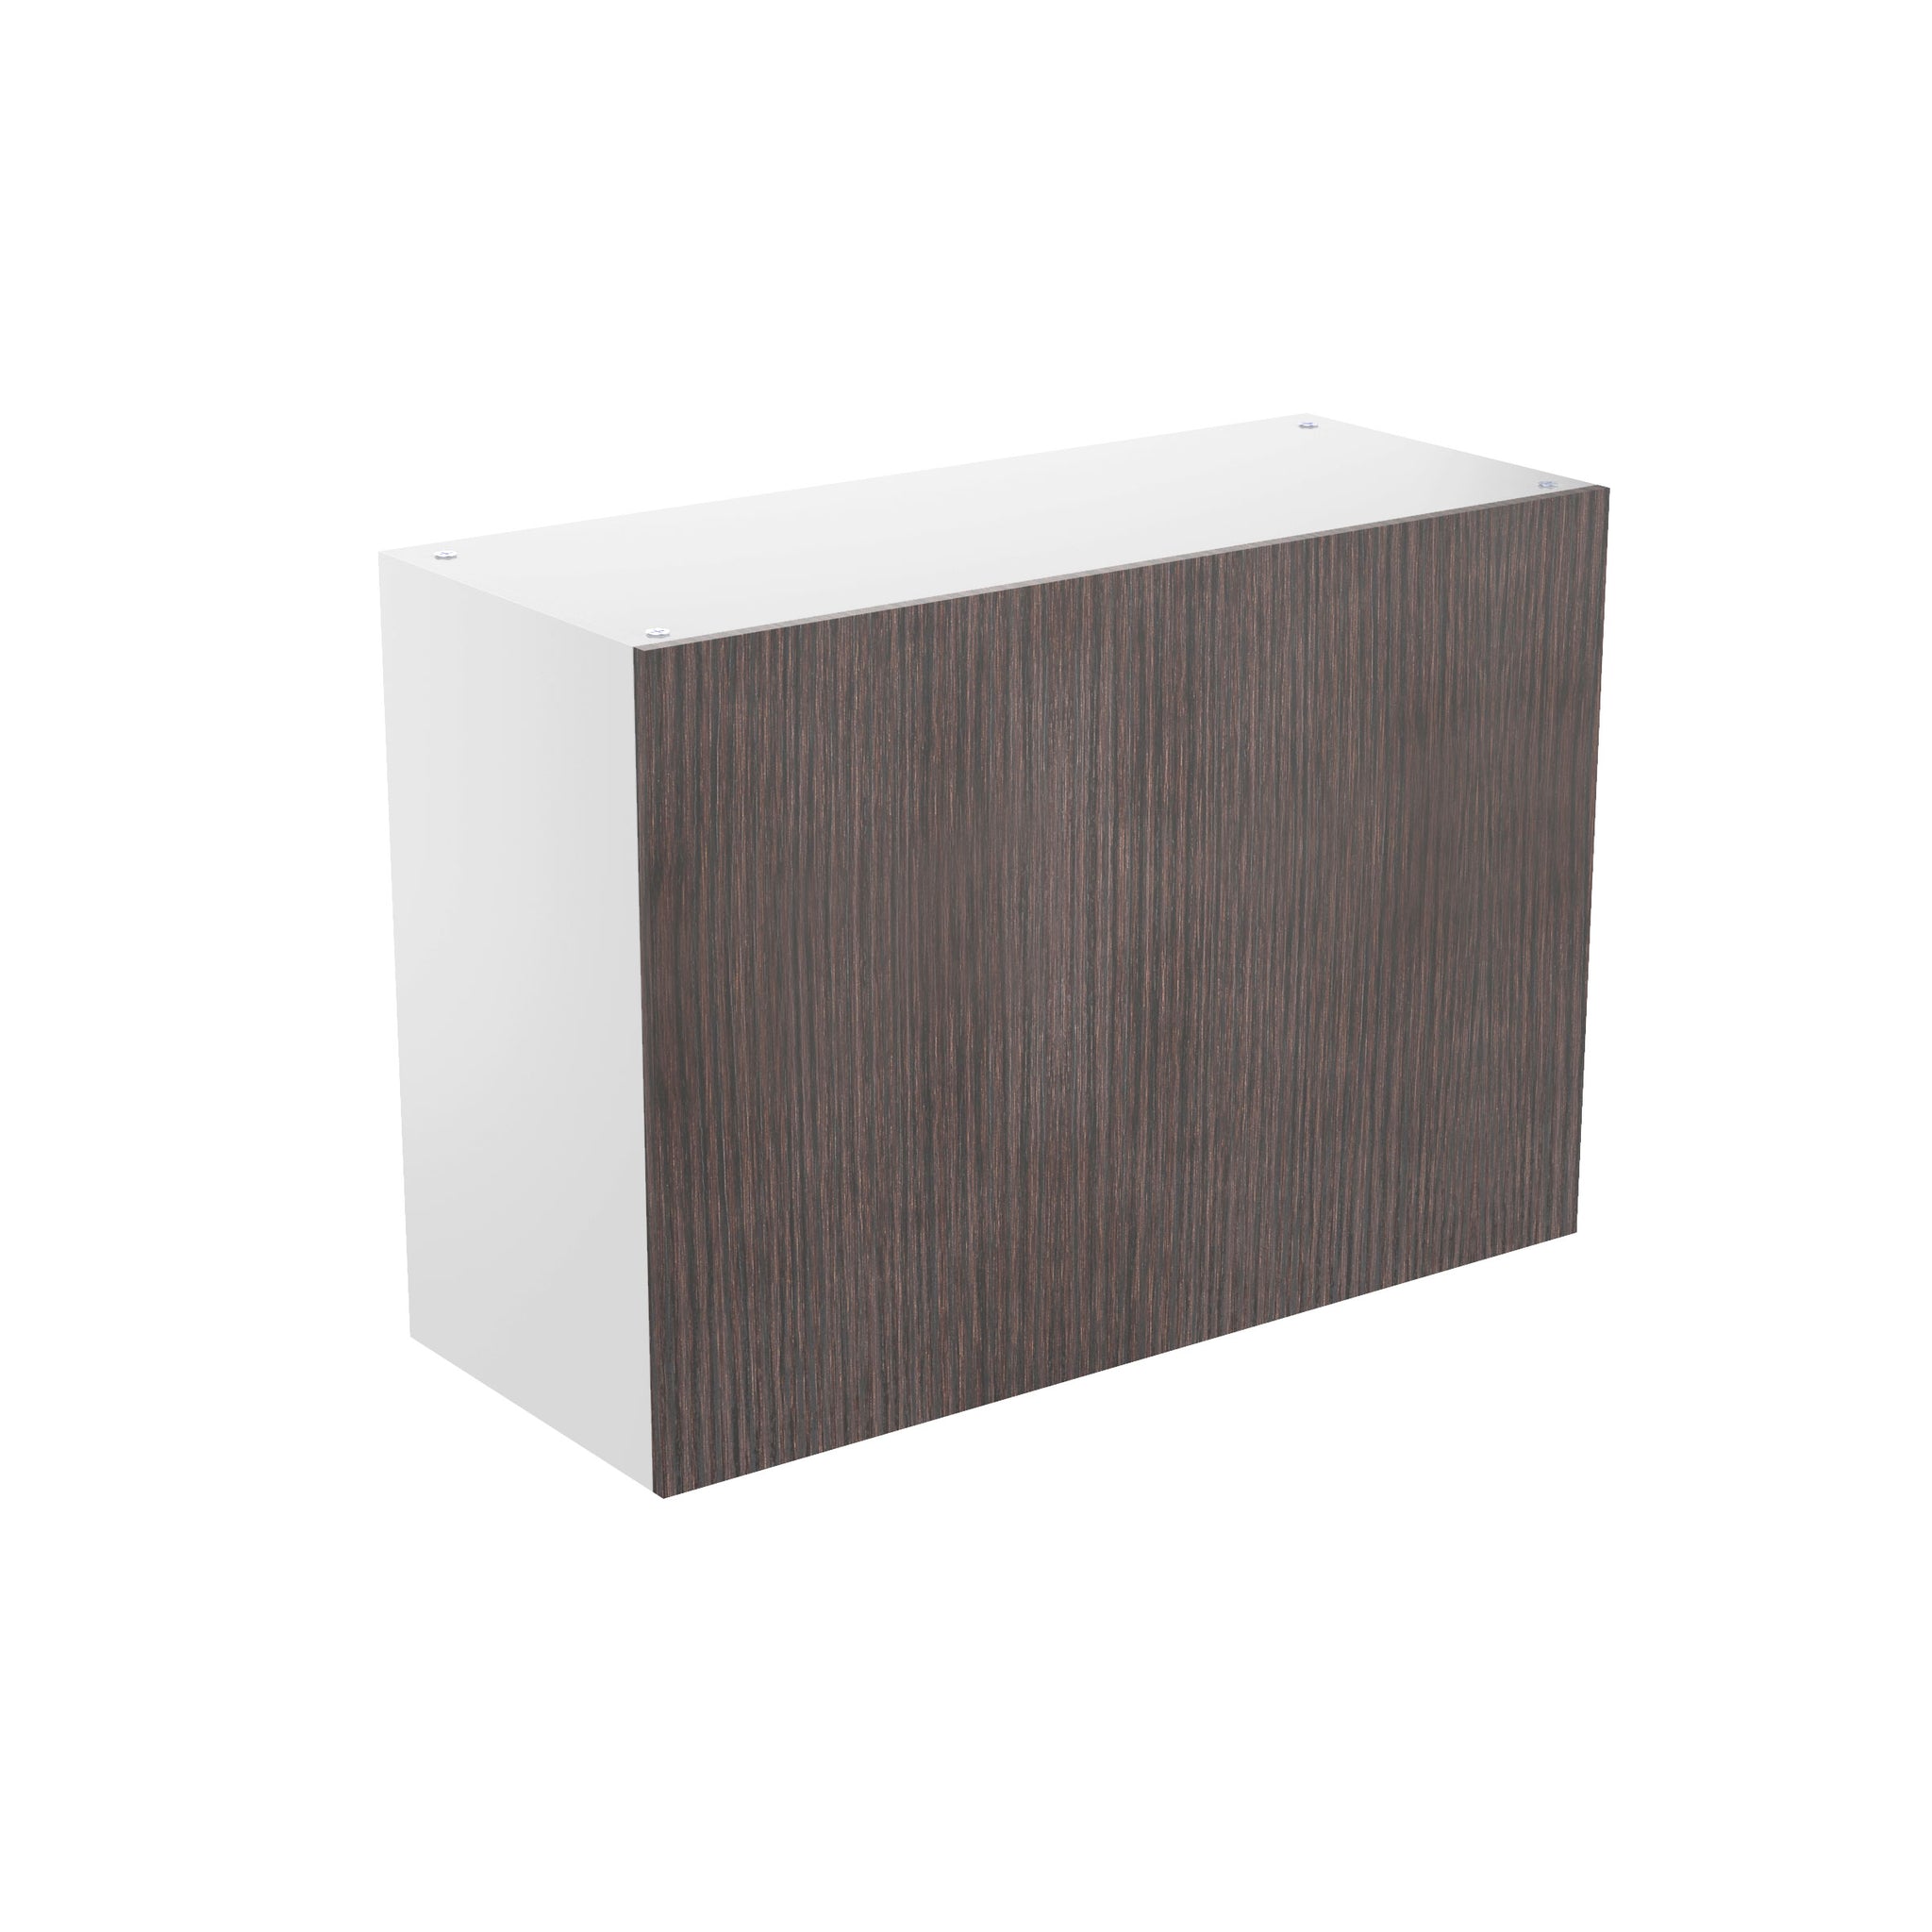 RTA - Brown Oak - Horizontal Door Wall Cabinets | 30"W x 21"H x 12"D